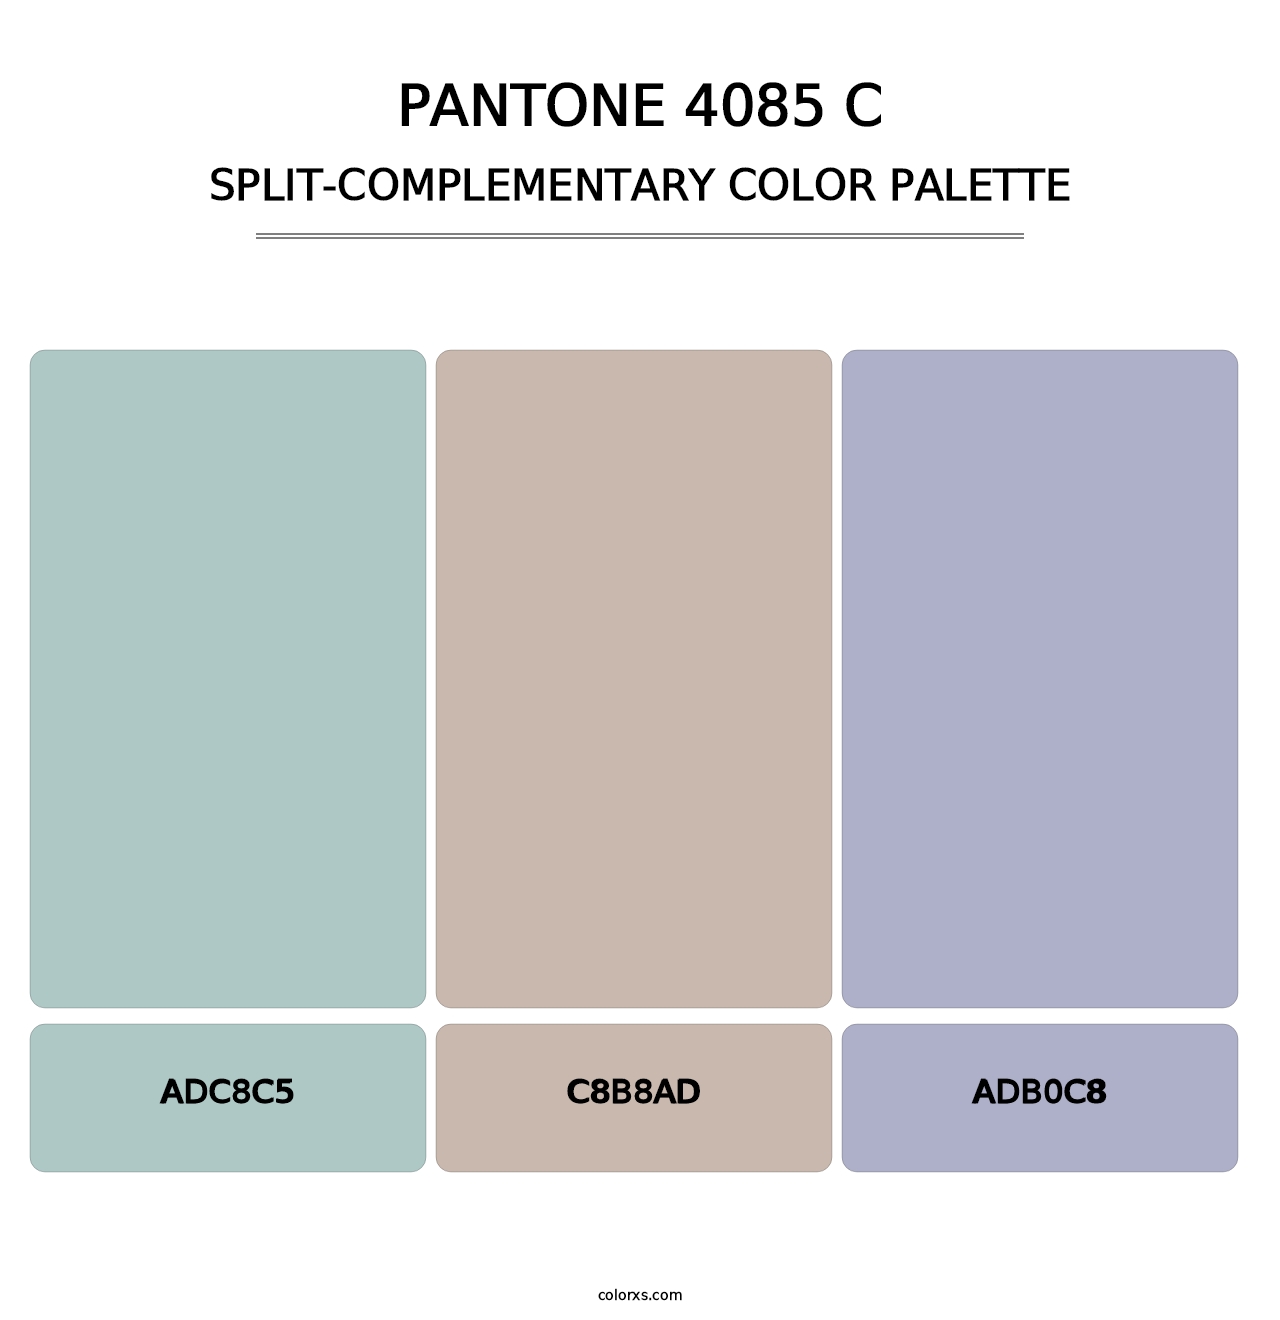 PANTONE 4085 C - Split-Complementary Color Palette